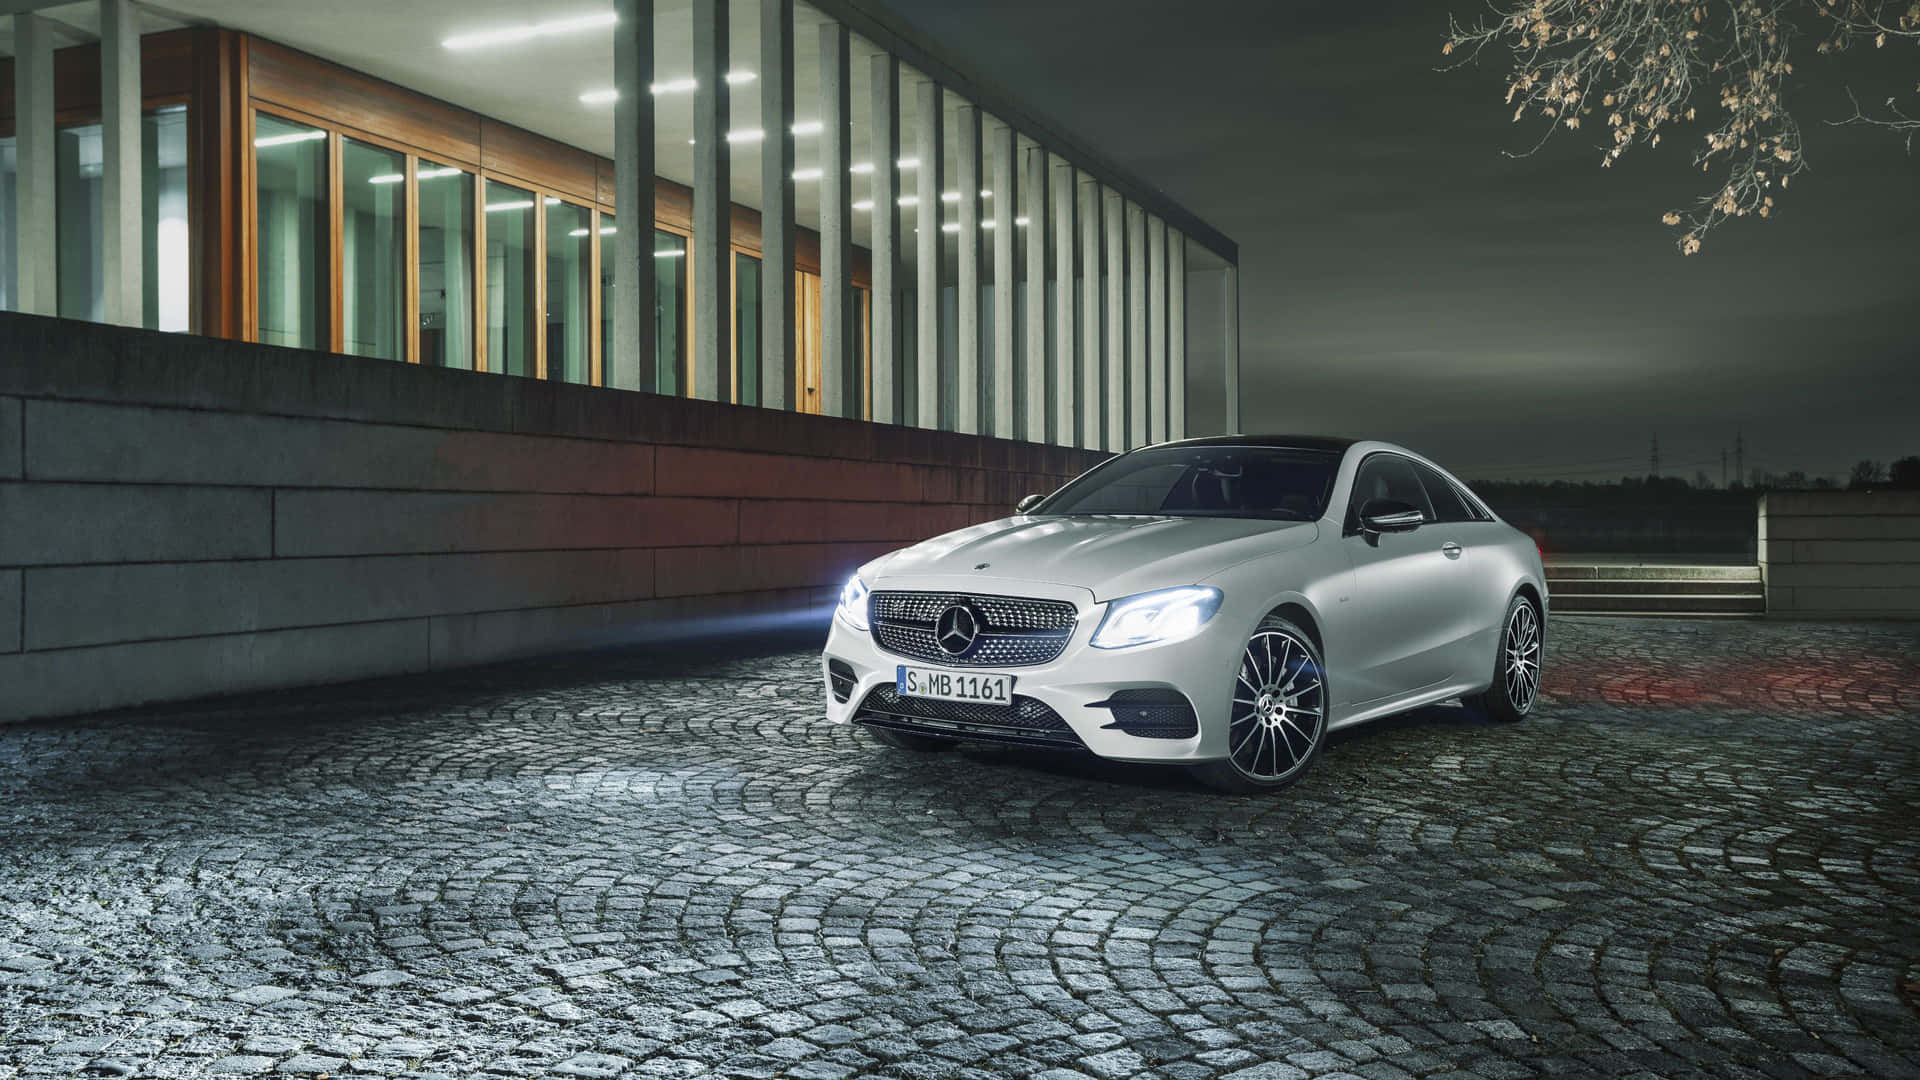 Tag køretøjet til en stilfuld og luksuriøs Mercedes Benz Clase E. Wallpaper